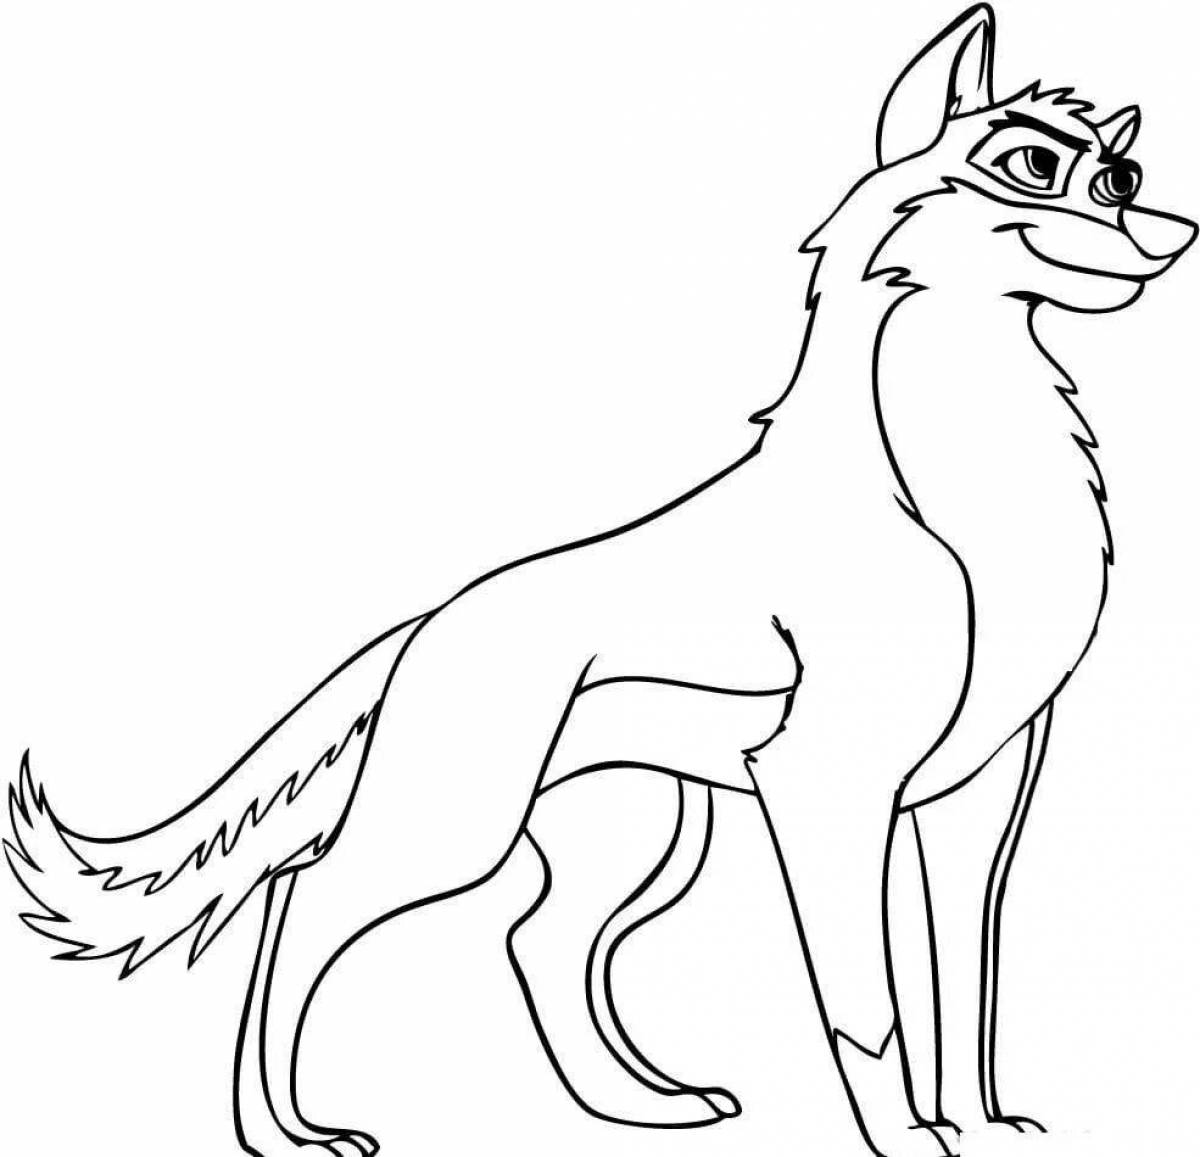 Драматическая раскраска рисунок волка